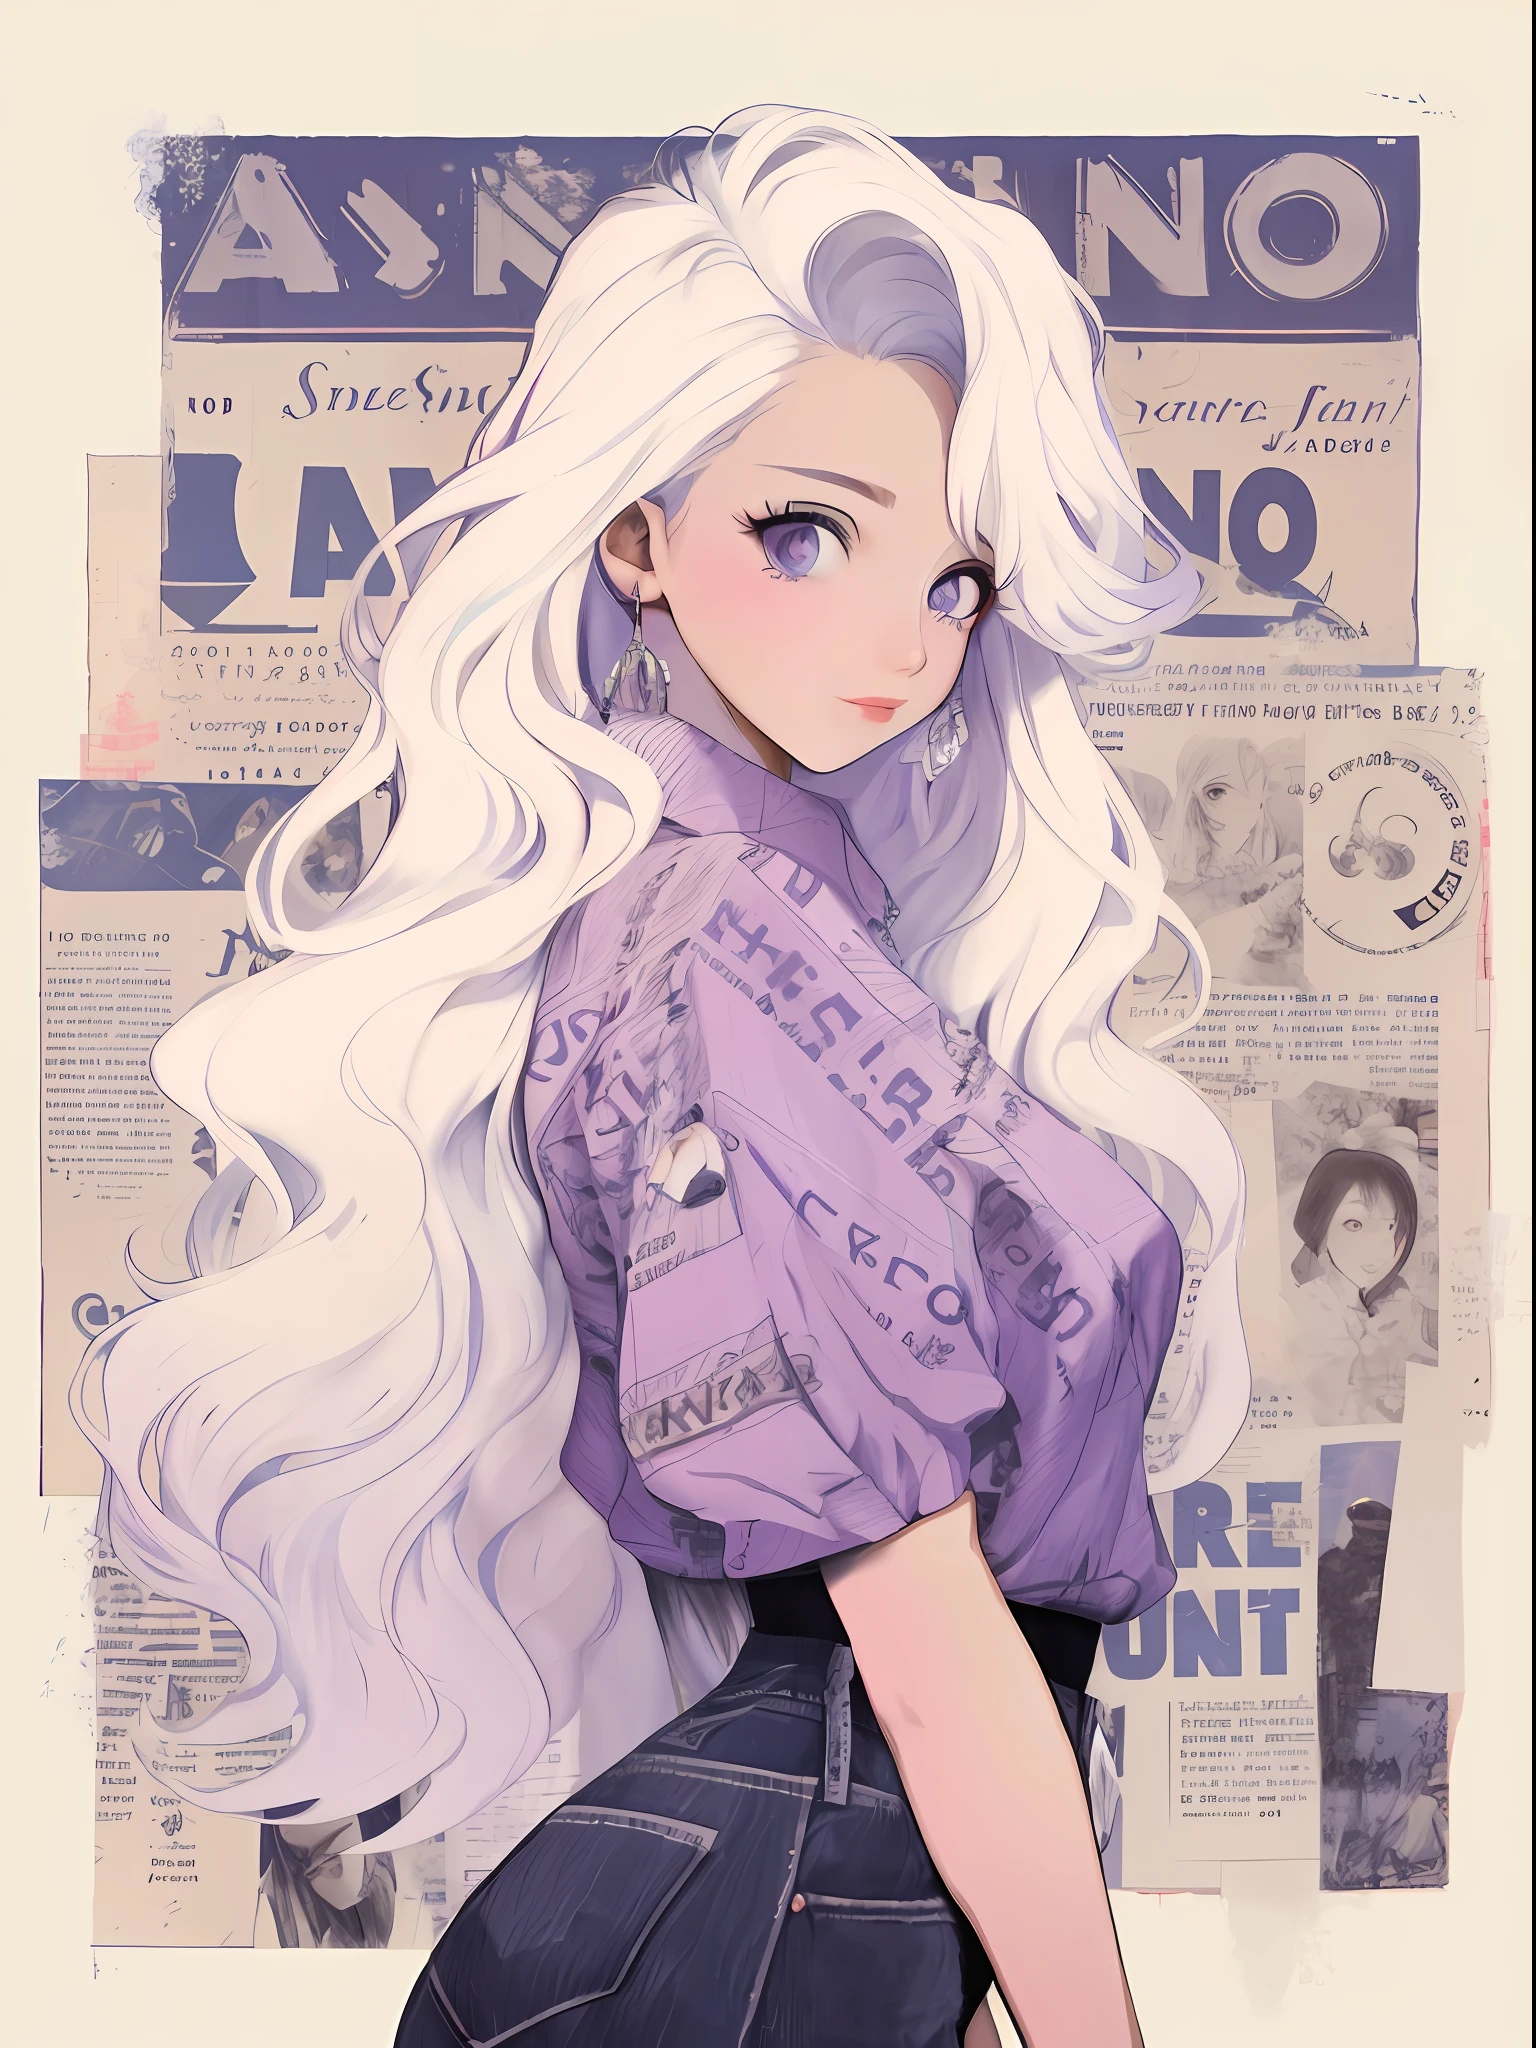 長い白い髪と紫色のシャツを着たアニメの女の子が新聞の前に立つ, レトロアニメの女の子, 完璧な白髪の女の子, 白髪の滄滄, 白髪の少女, ロストランスタイル, 長い髪のイリヤ・クフシノフ, 白髪の女性, アニメ風イラスト, ロス・トラン風, artstrationでトレンド, アニメグラフィックイラスト, ロス・トラン!!!